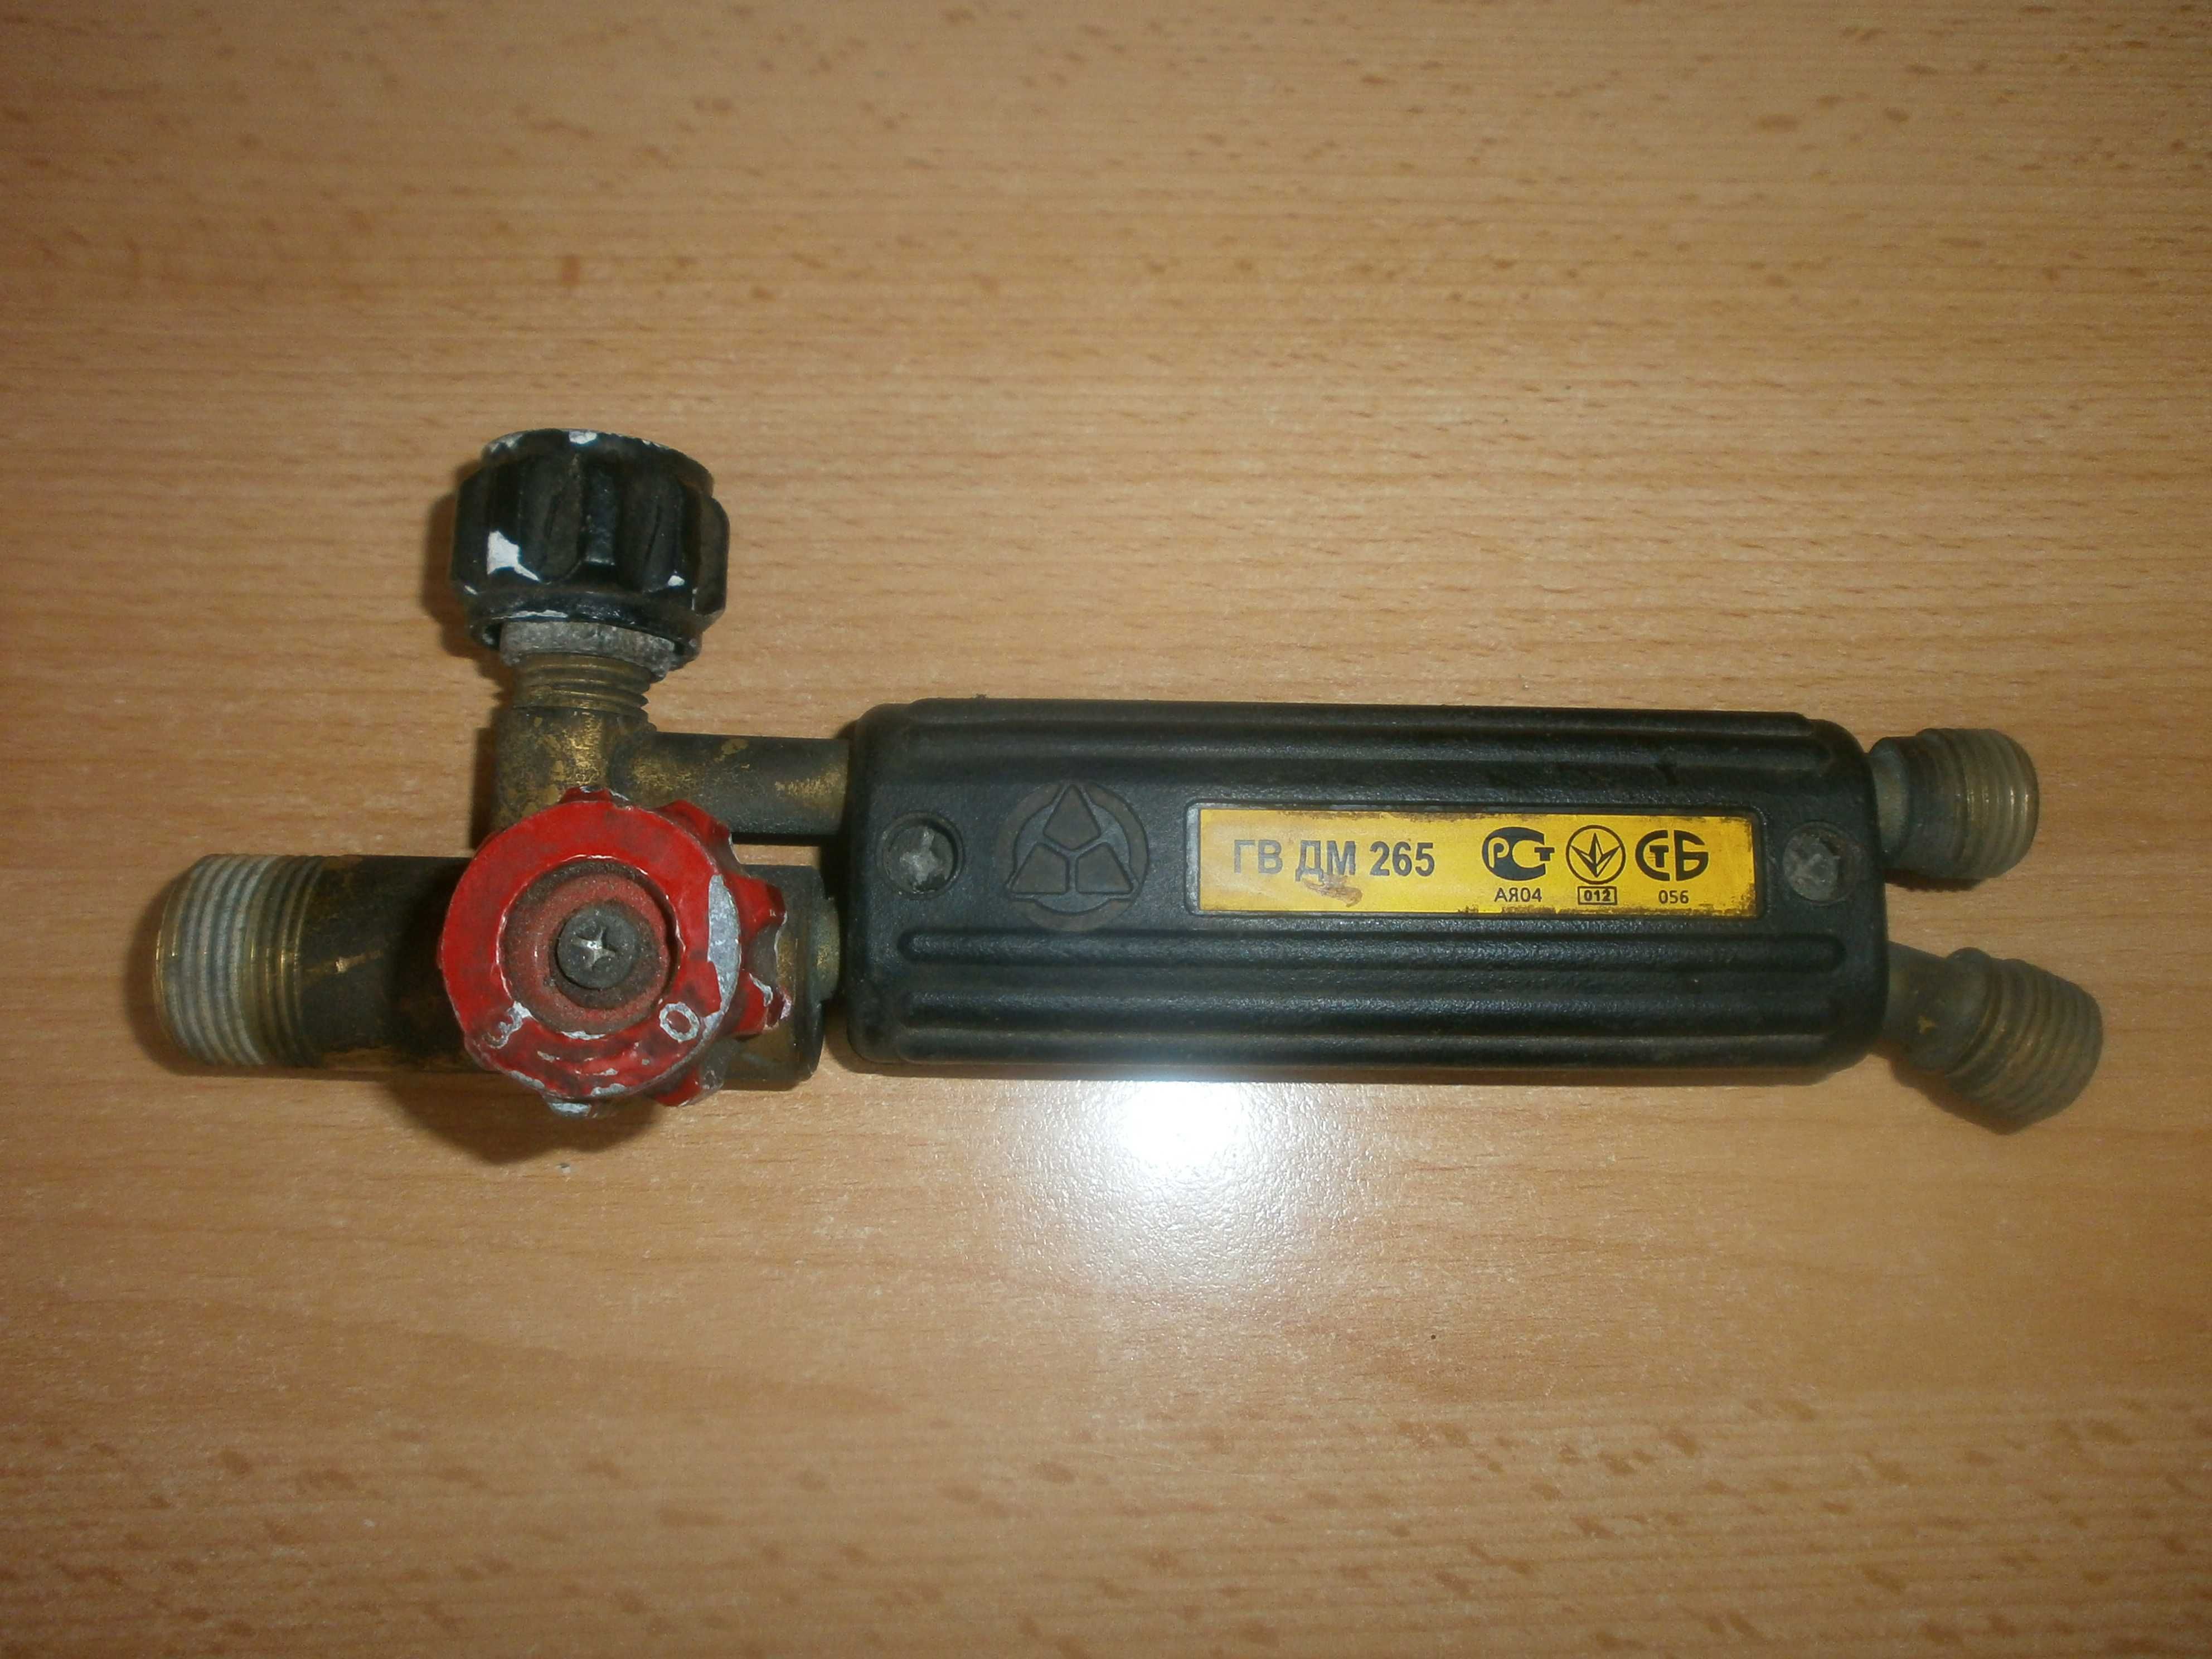 Газовую горелку ГВ ДМ 265 "Донмет".